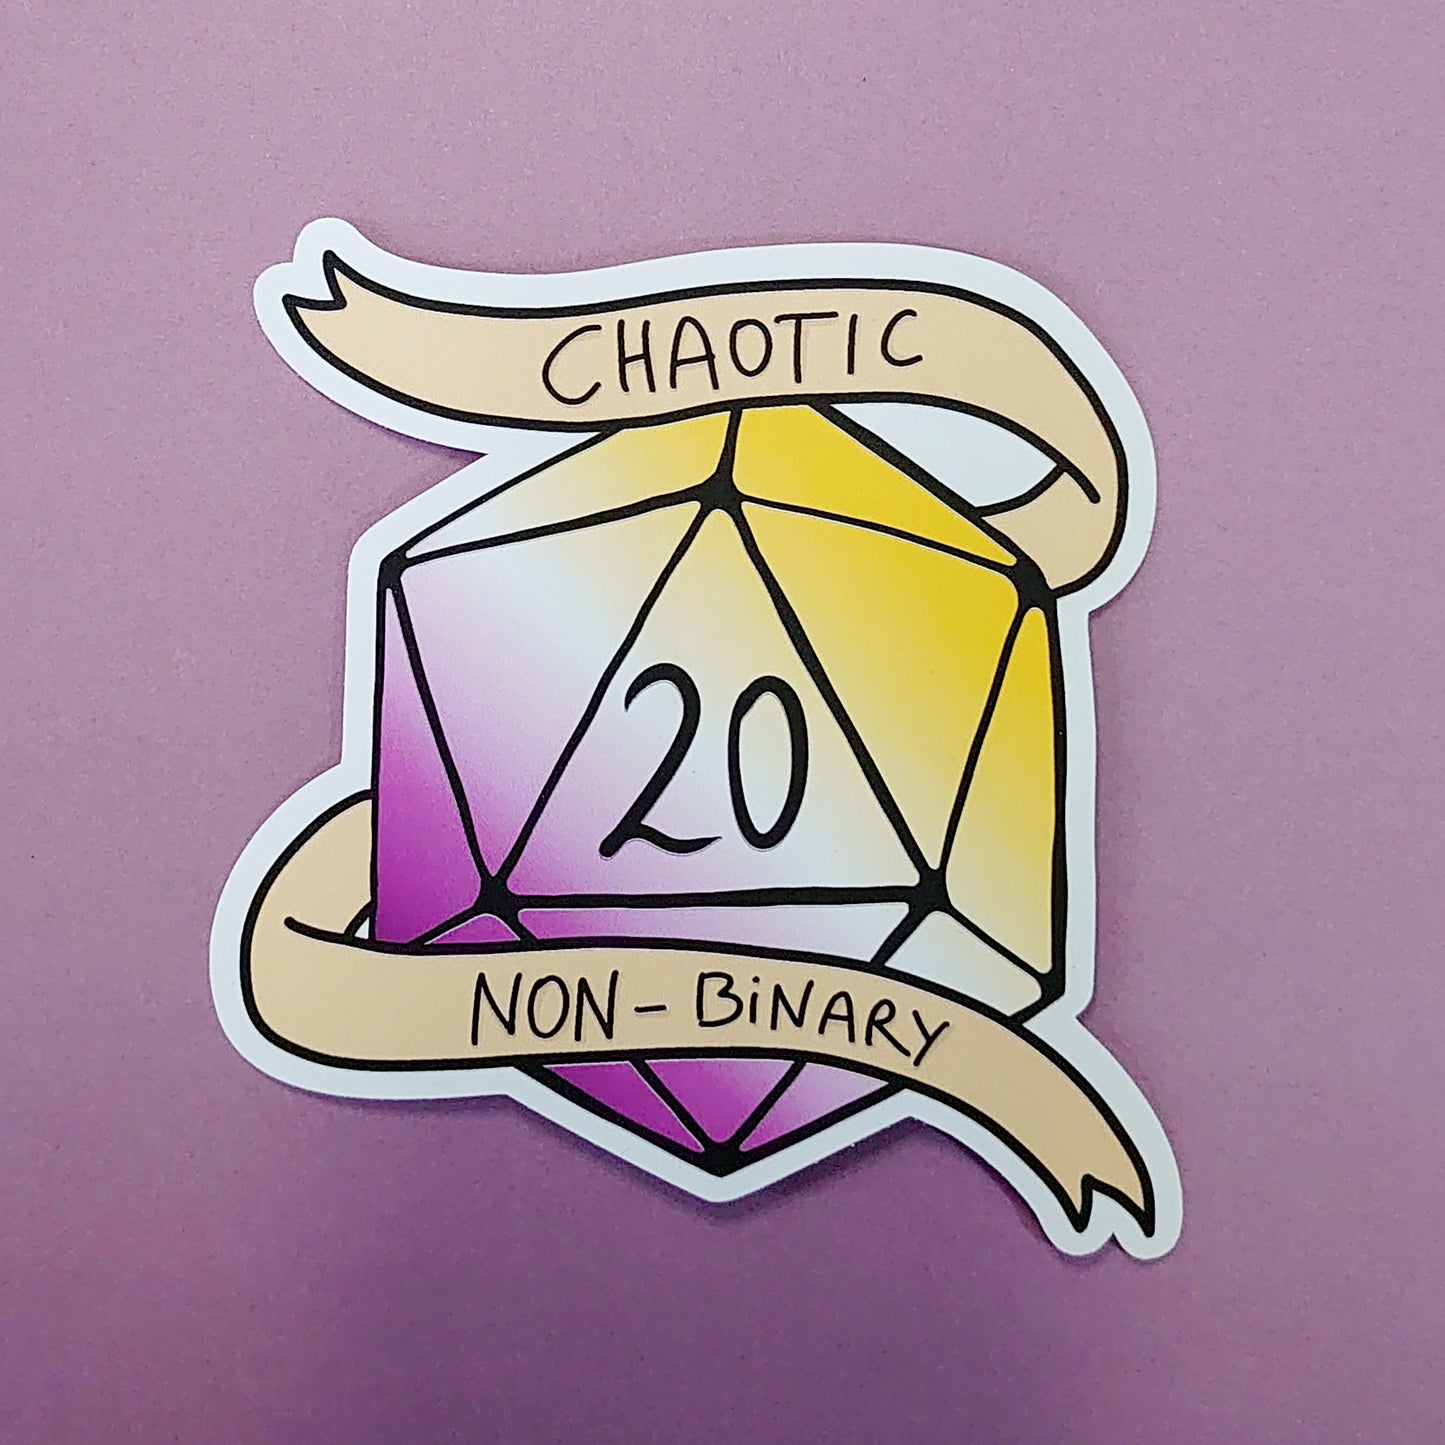 Chaotic Nonbinary - D20 Dice DnD Sticker - Fantasy Sticker